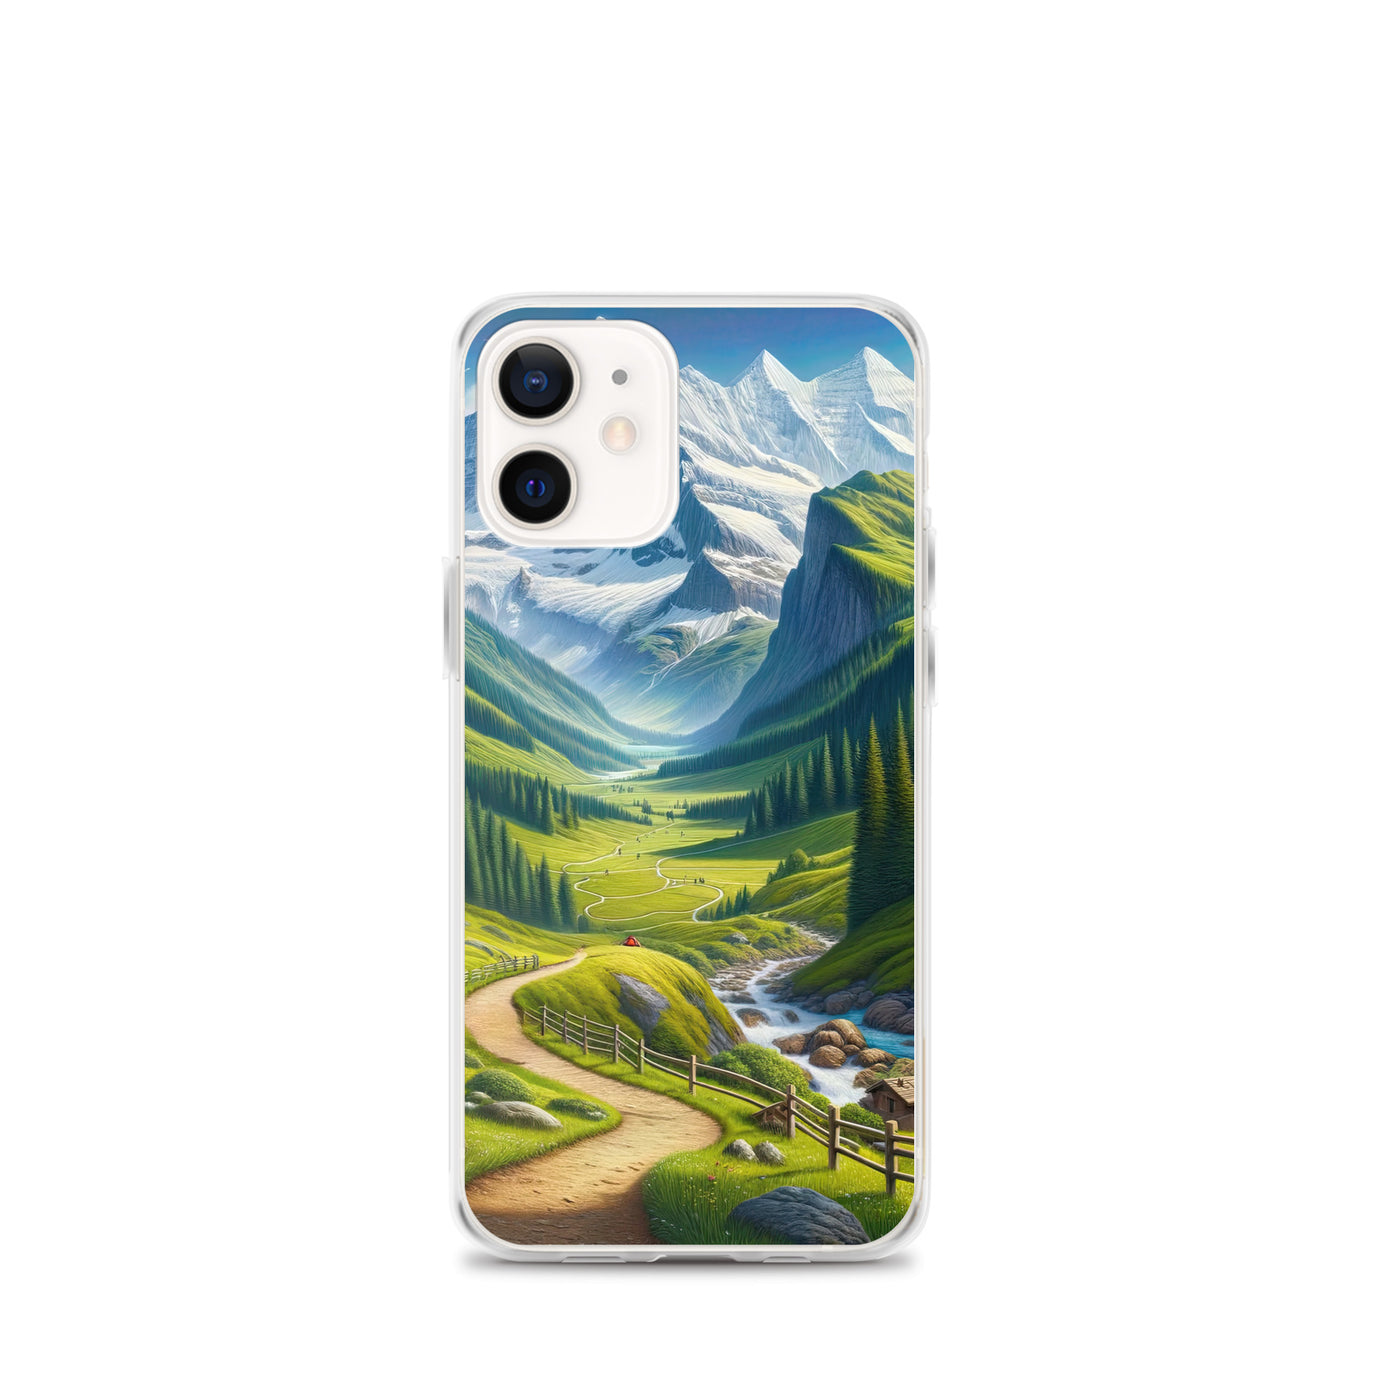 Wanderer in den Bergen und Wald: Digitale Malerei mit grünen kurvenreichen Pfaden - iPhone Schutzhülle (durchsichtig) wandern xxx yyy zzz iPhone 12 mini